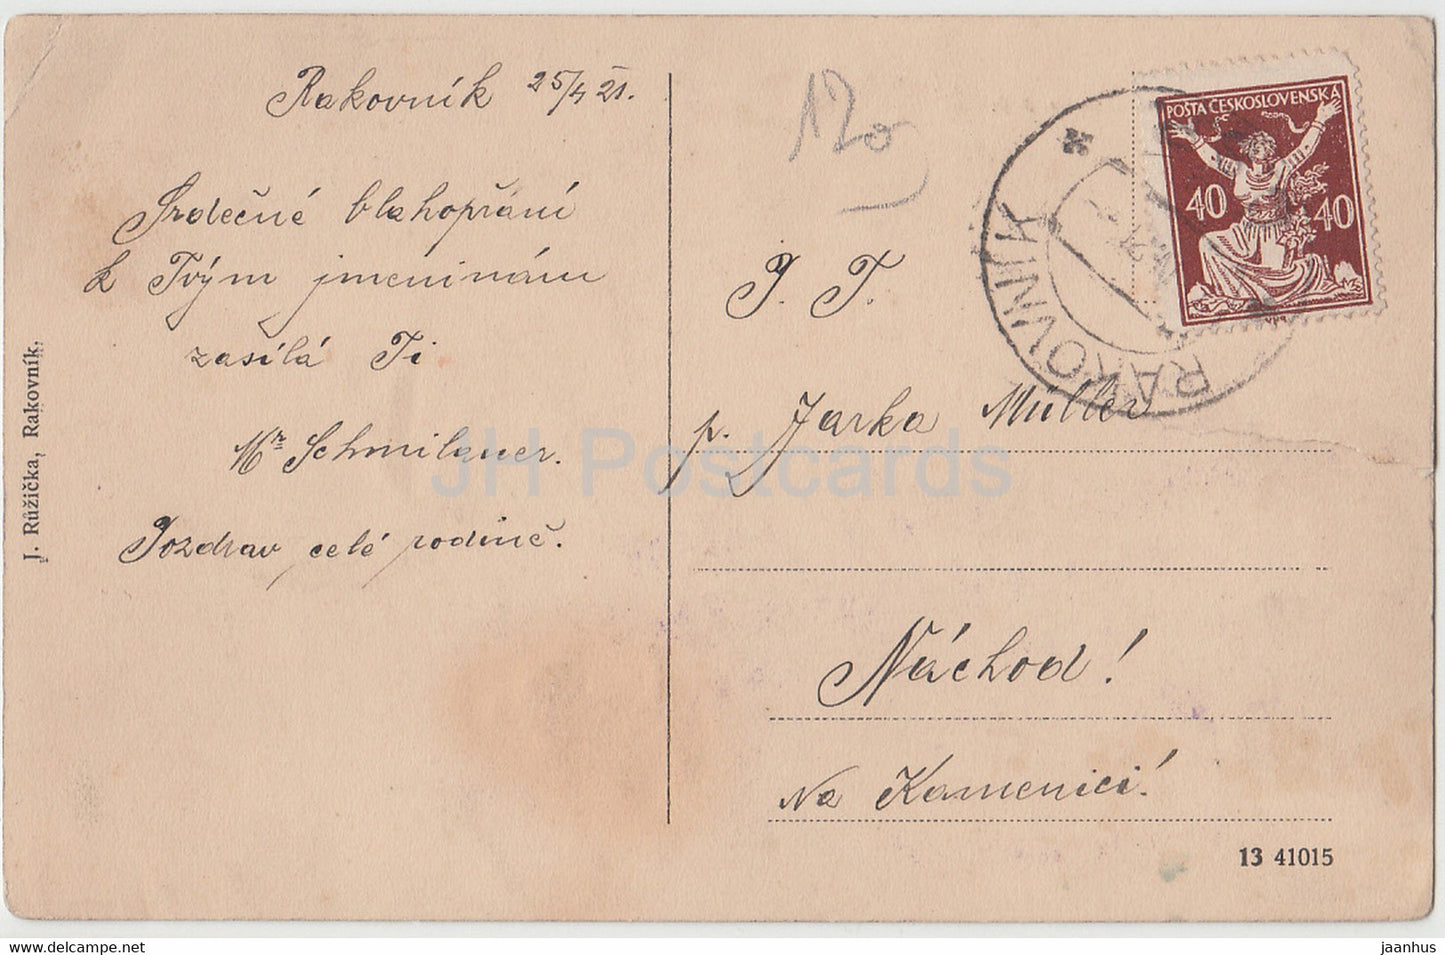 Rakovnik - Kostelicek sv Jilji - église - carte postale ancienne - 1921 - République tchèque - Tchécoslovaquie - utilisé